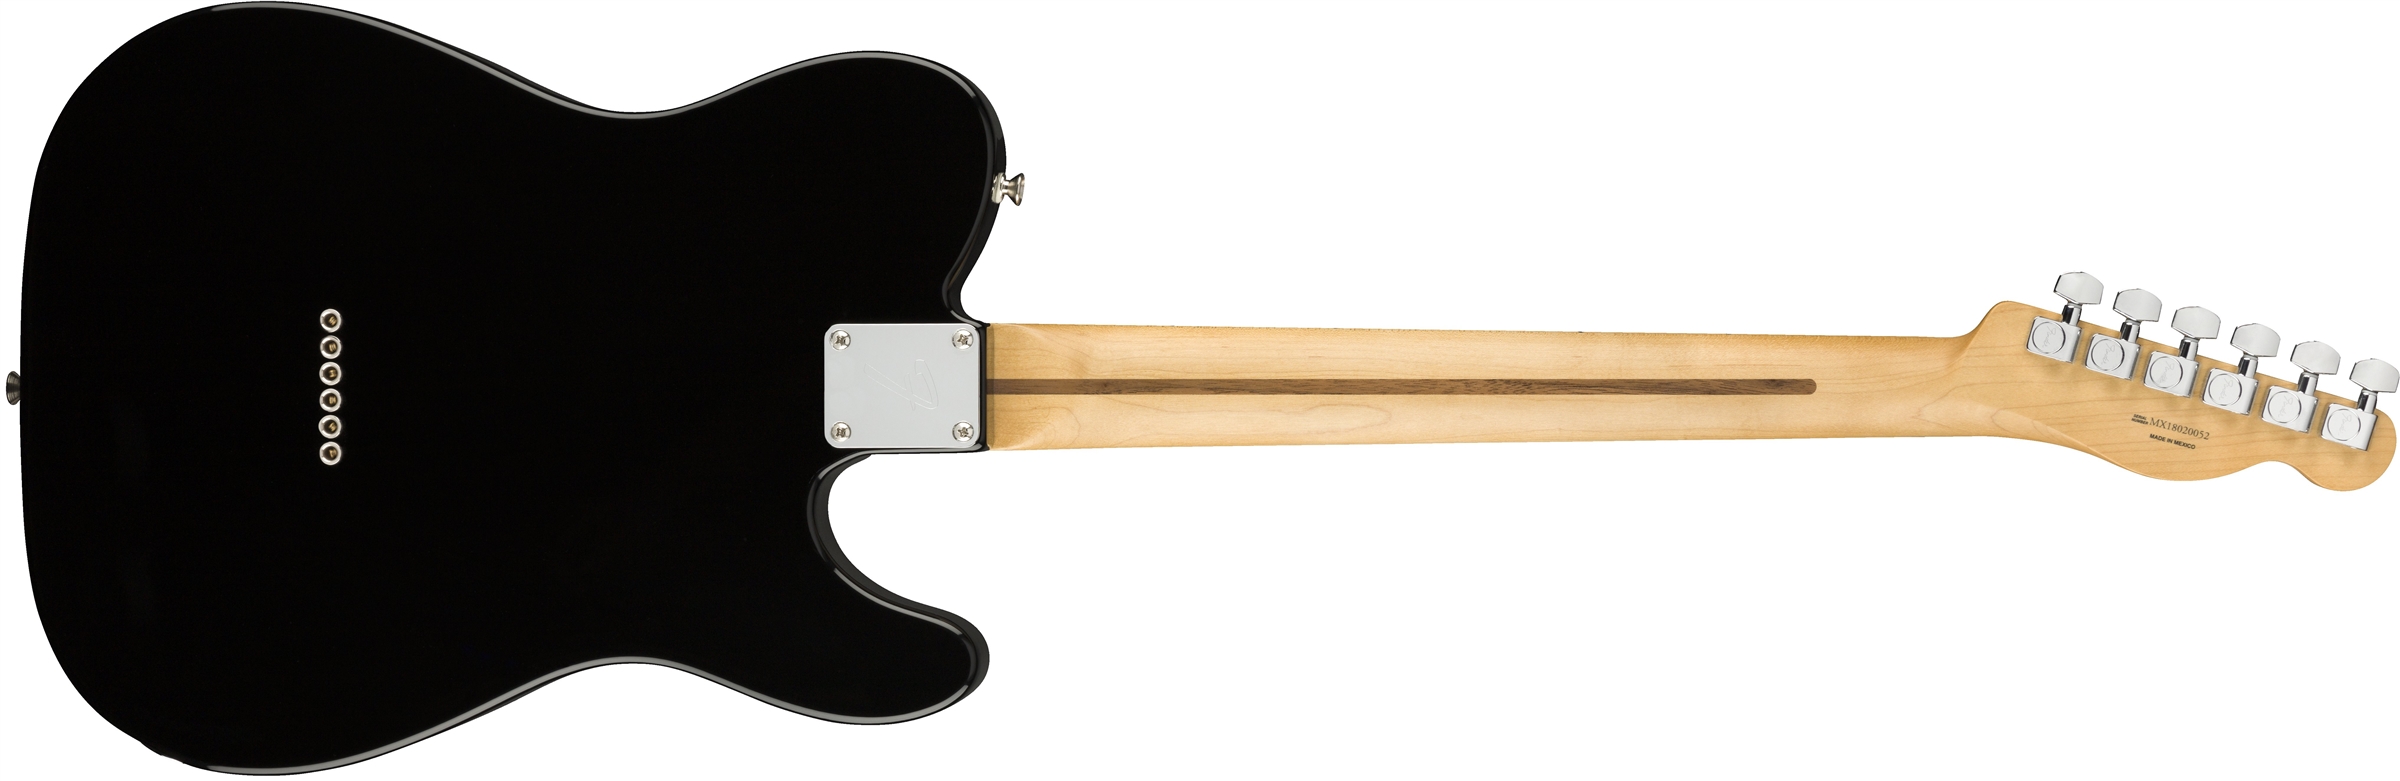 Fender Tele Player Lh Gaucher Mex Ss Mn - Black - Linkshandige elektrische gitaar - Variation 1